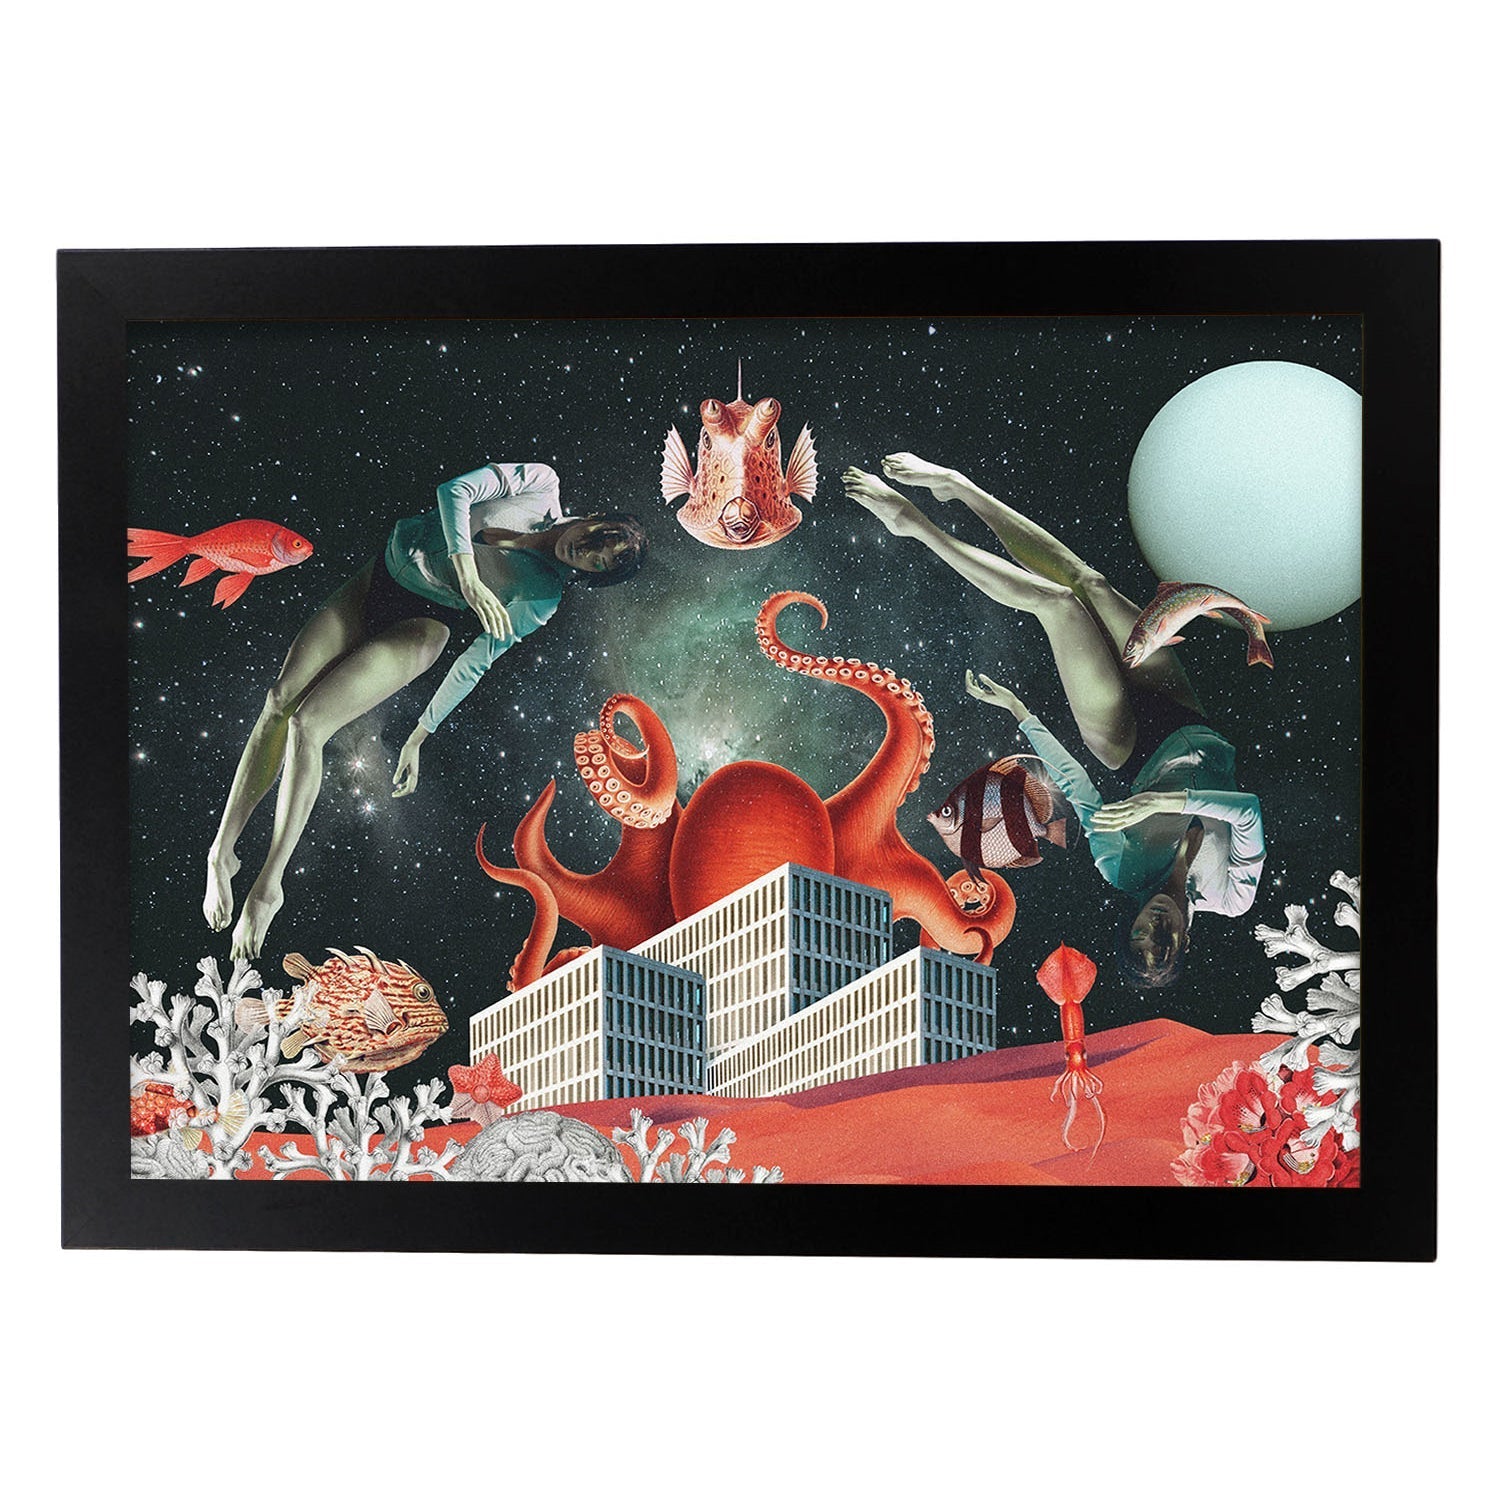 Lamina artistica decorativa con ilustración de Sea Space estilo Collage-Artwork-Nacnic-A4-Marco Negro-Nacnic Estudio SL